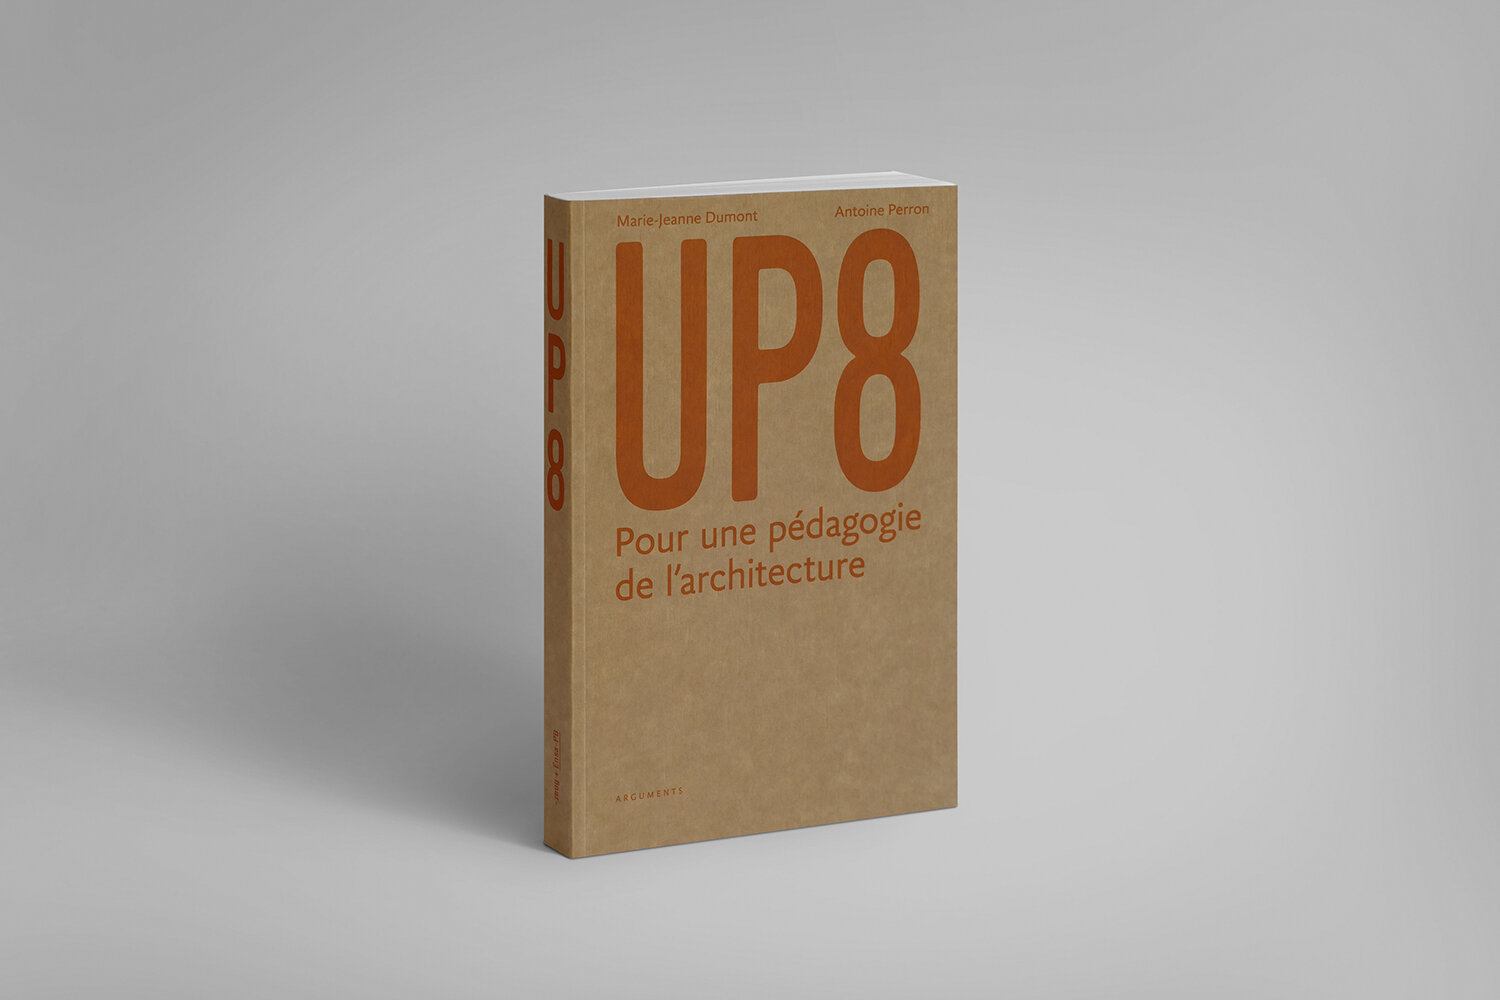 UP8 — Pour une pédagogie de l'architecture